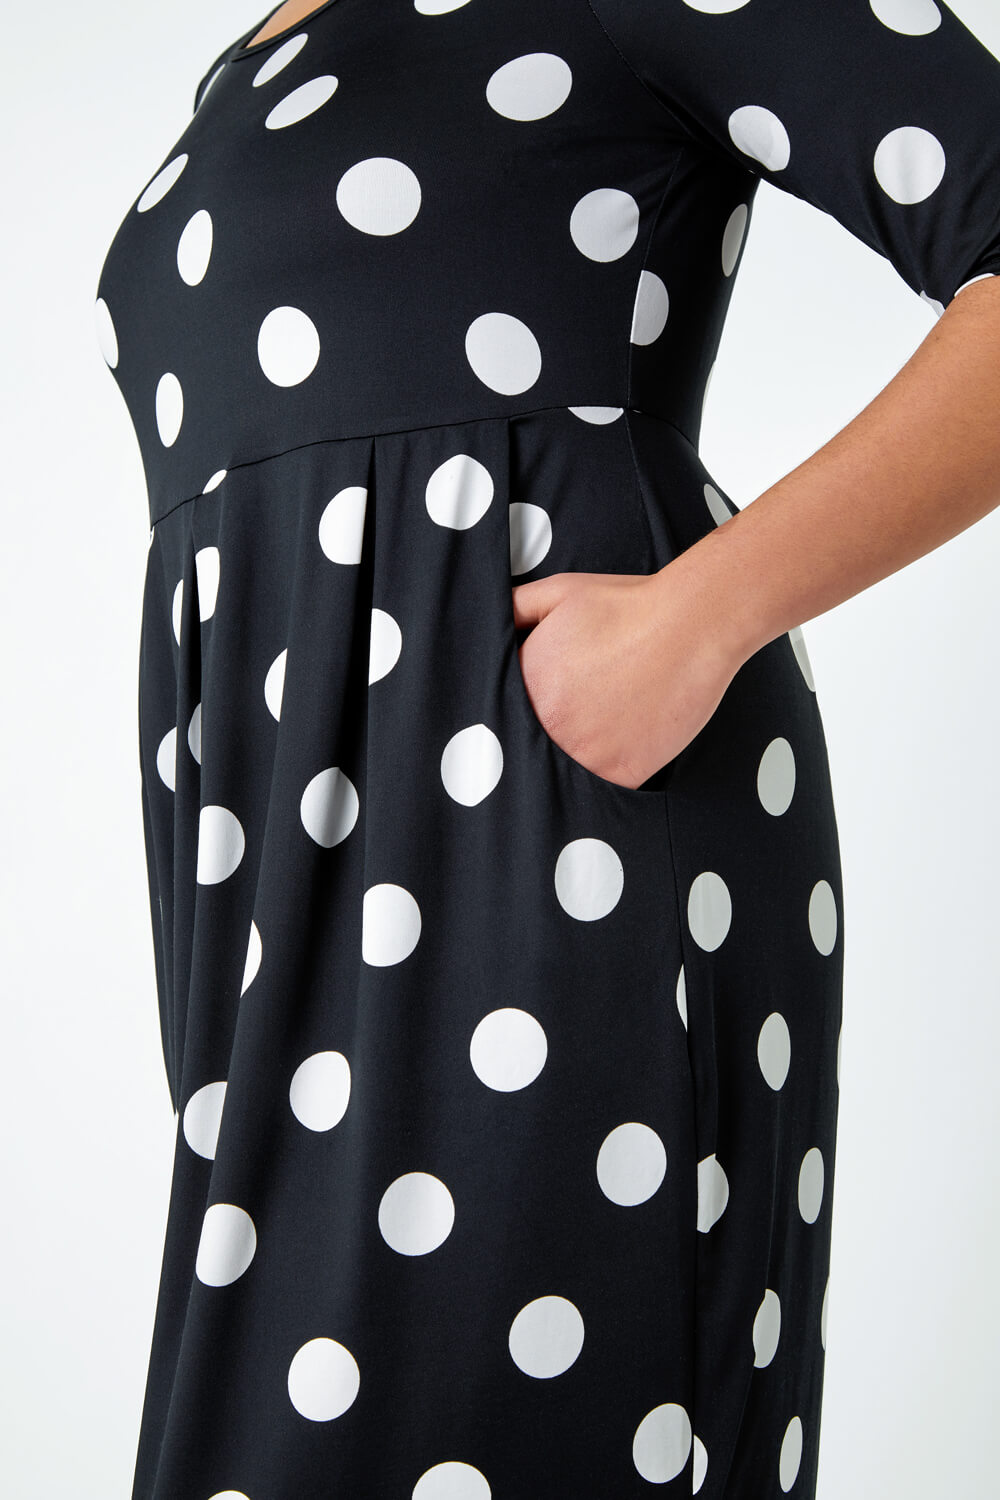 Black Curve Polka Dot Stretch Pocket Dress, Image 5 of 5